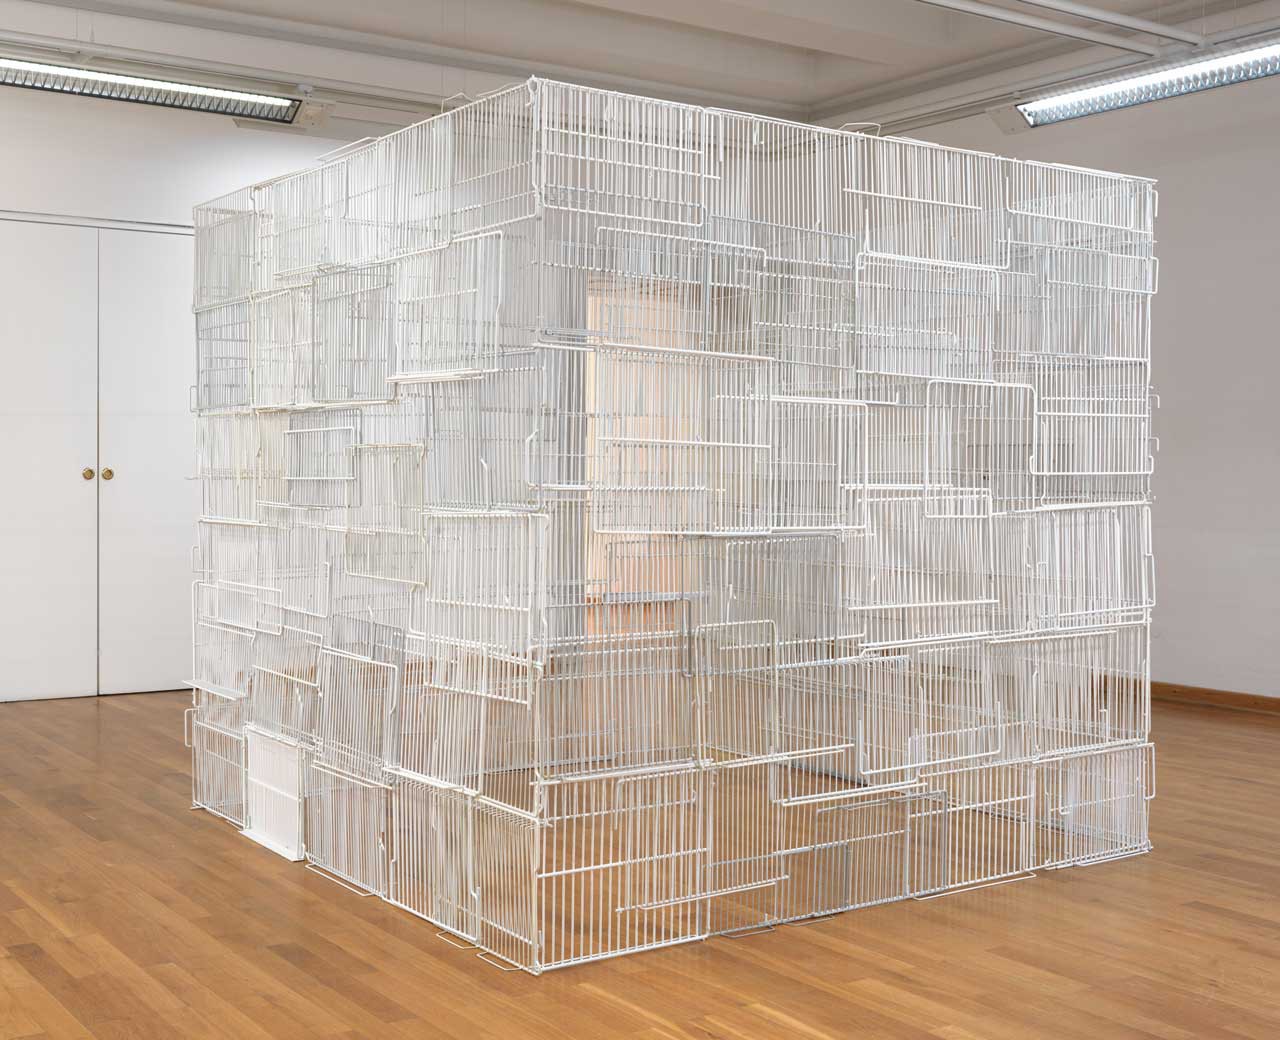 Untitled | 2012 | refrigerator shelves, cable ties | 190 x 210 x 210 cm | exhibition view Städtische Galerie Wolfsburg | photo: Bernd Borchardt